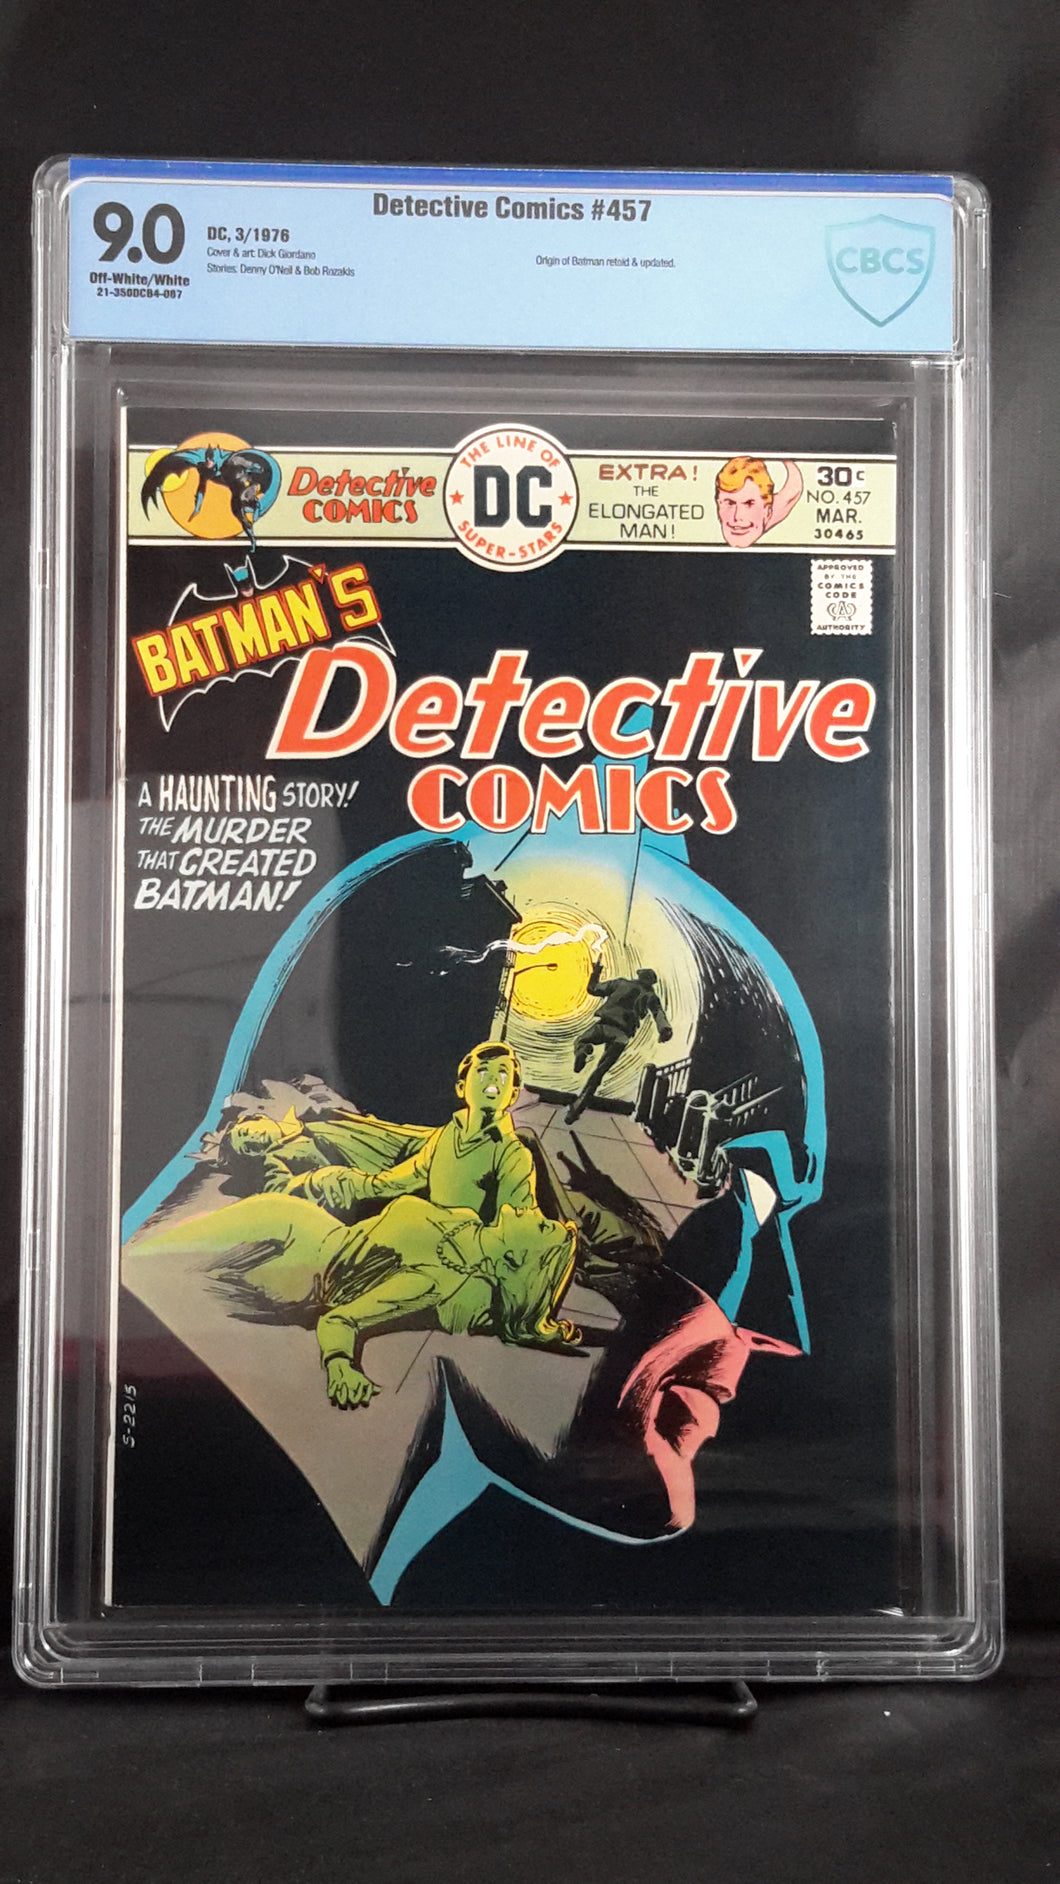 DETECTIVE COMICS (1937) #457 9.0 CBCS